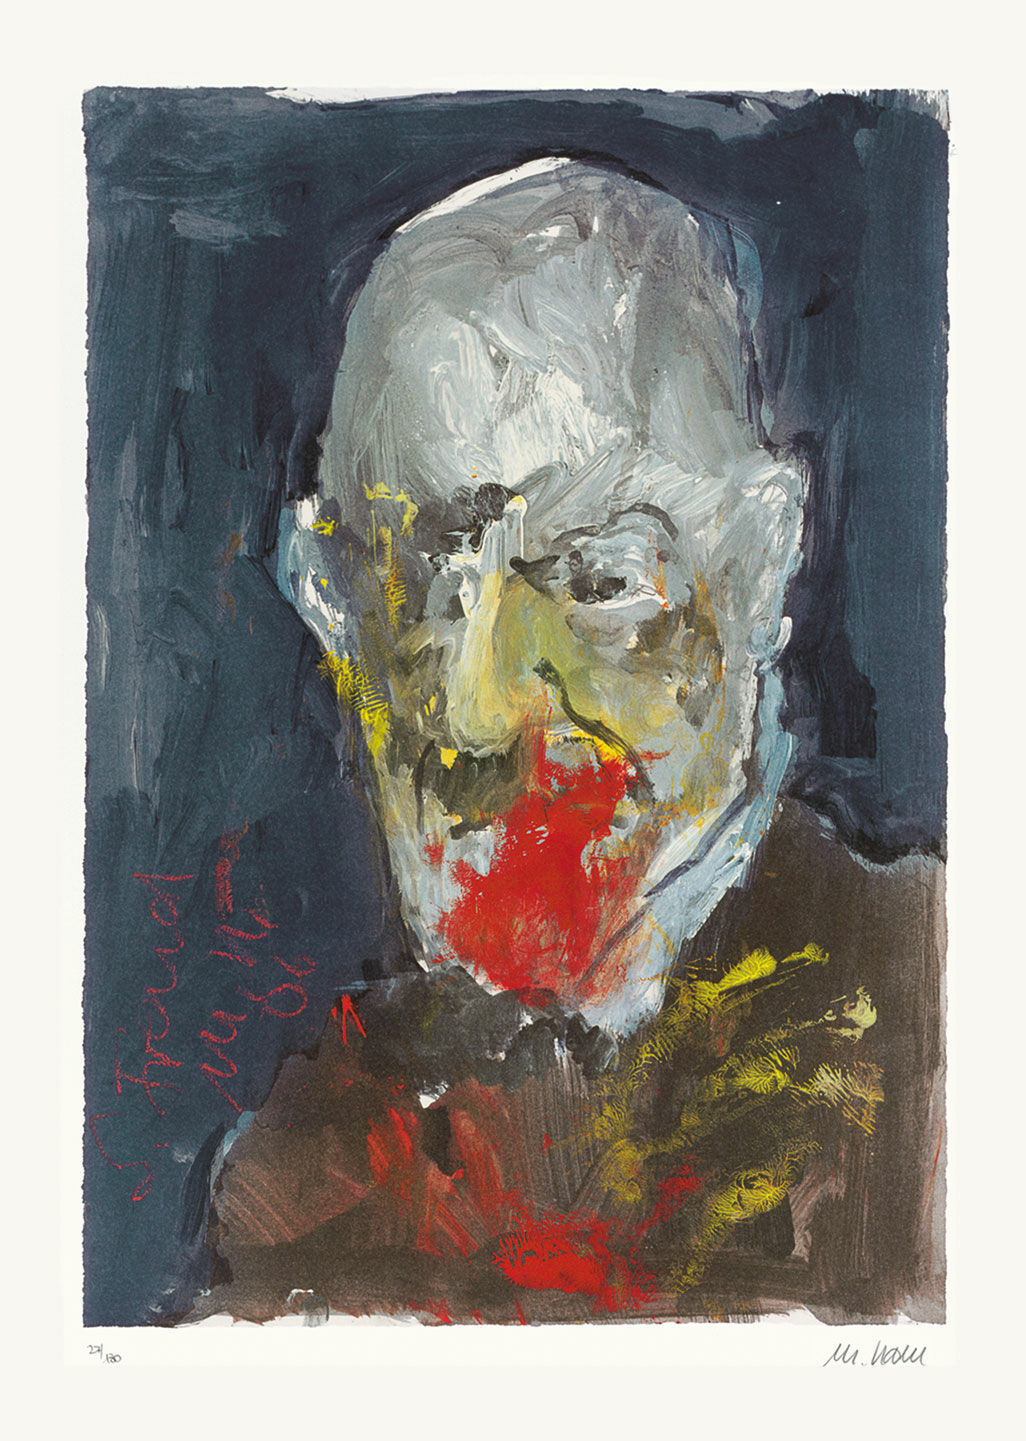 Picture "Sigmund Freud" (2006), unframed by Armin Mueller-Stahl